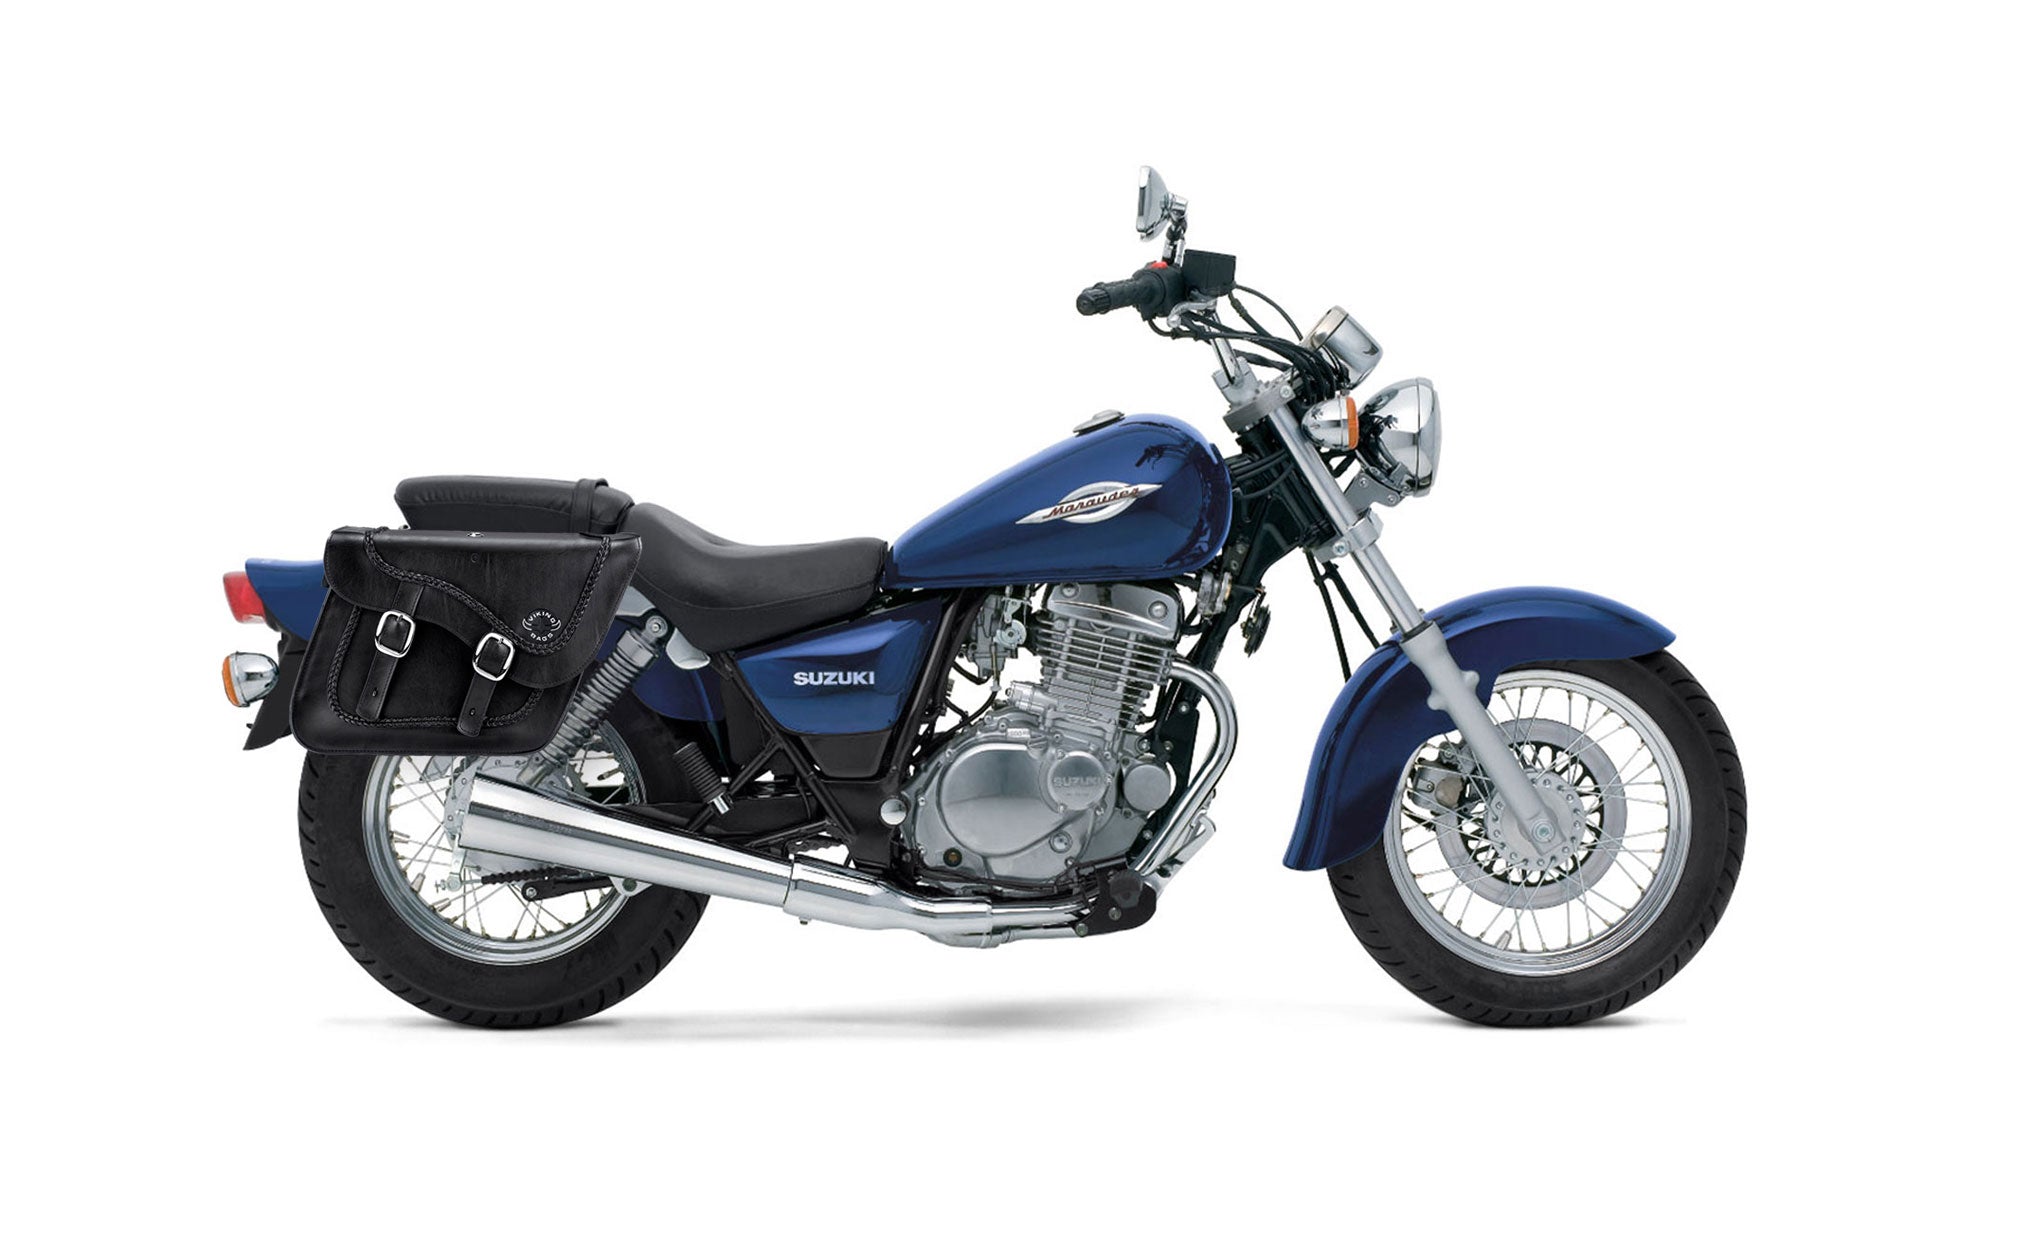 Viking Americano Suzuki Marauder Gz250 Braided Large Leather Motorcycle Saddlebags on Bike Photo @expand